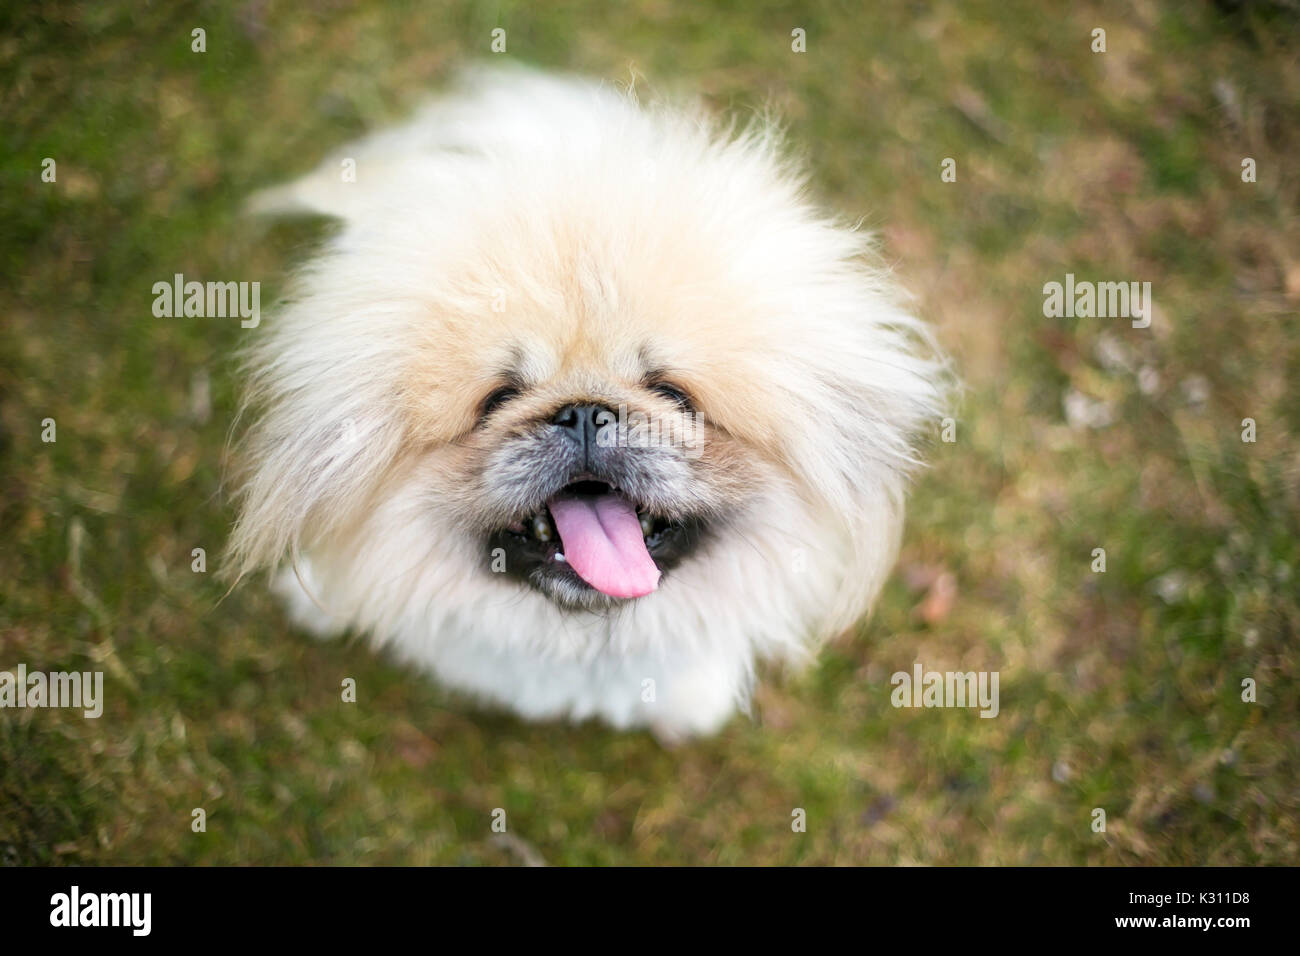 Pekinés perro purebred Fuzzy Foto de stock